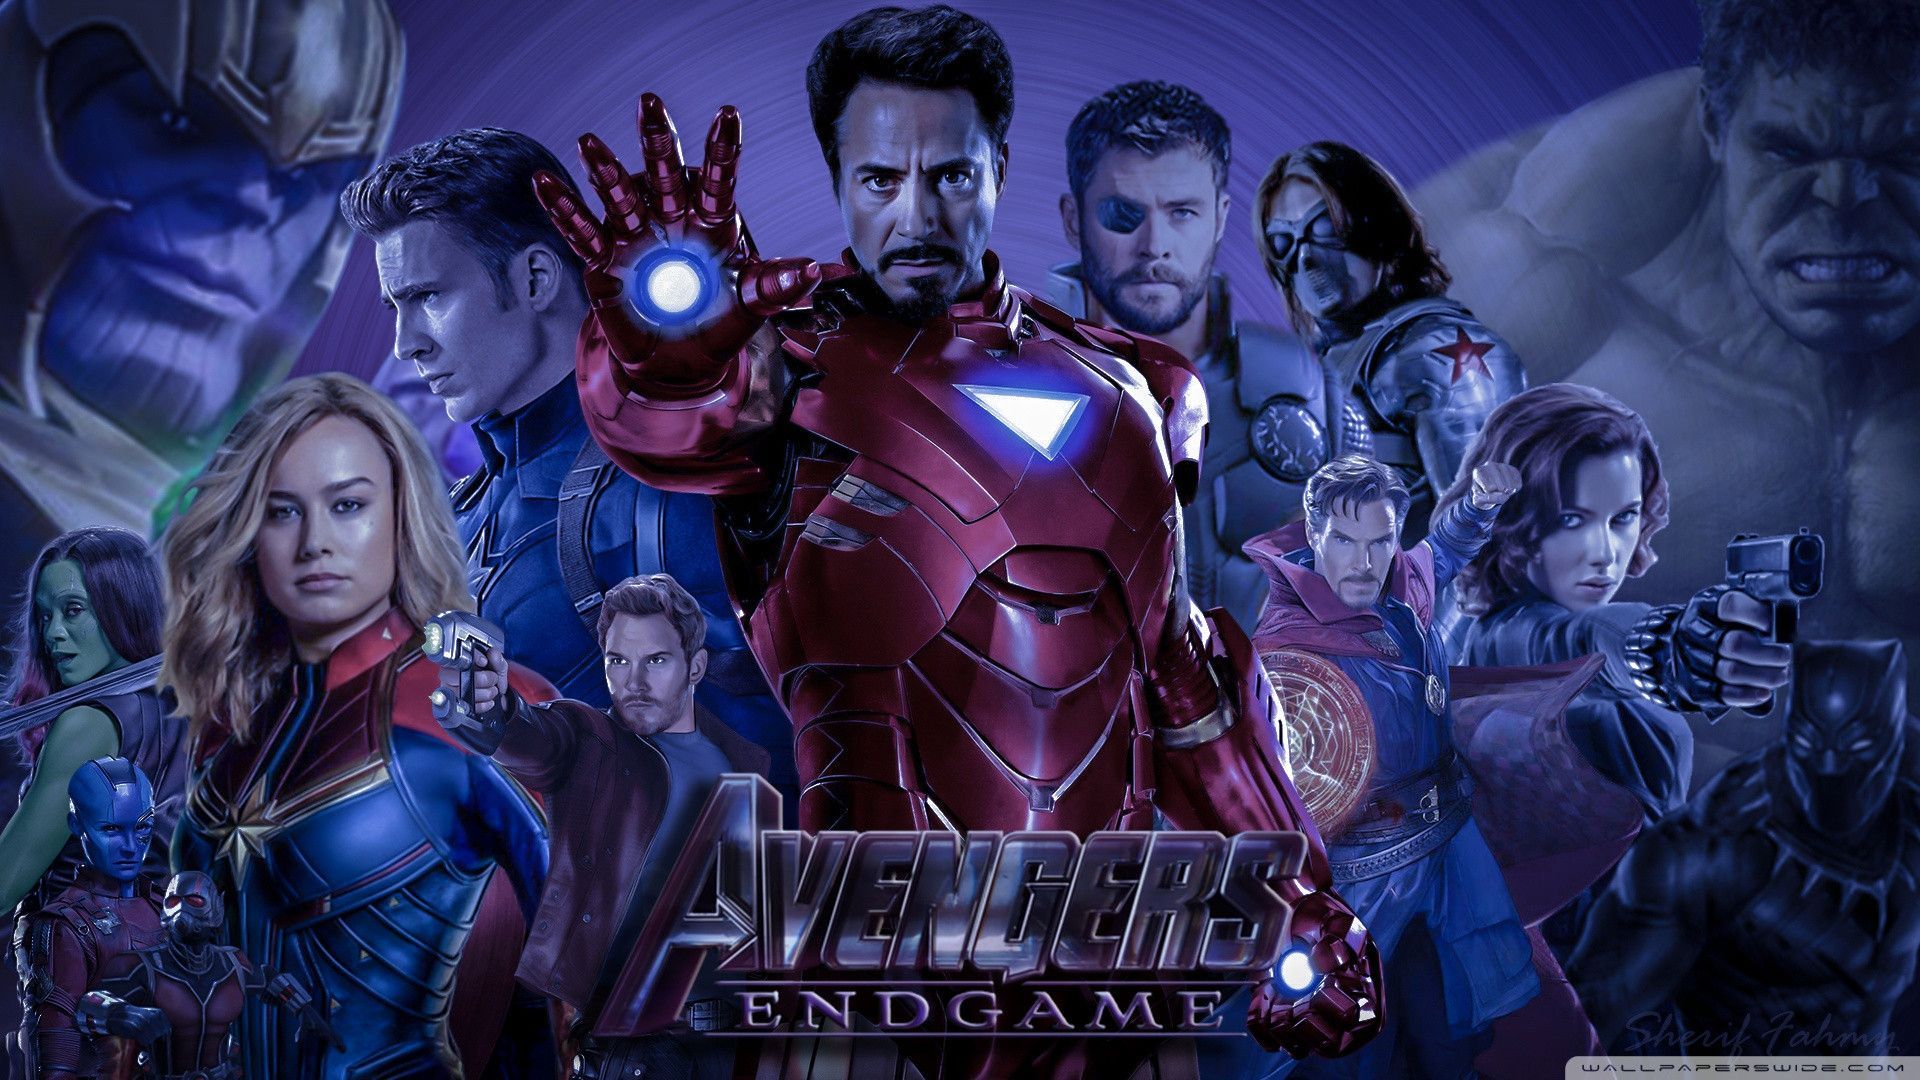 Awesome Avengers Endgame 4k HD Desktop Wallpaper For 4k Ultra HD Tv. Avengers wallpaper, 4k ultra HD tvs, Avengers